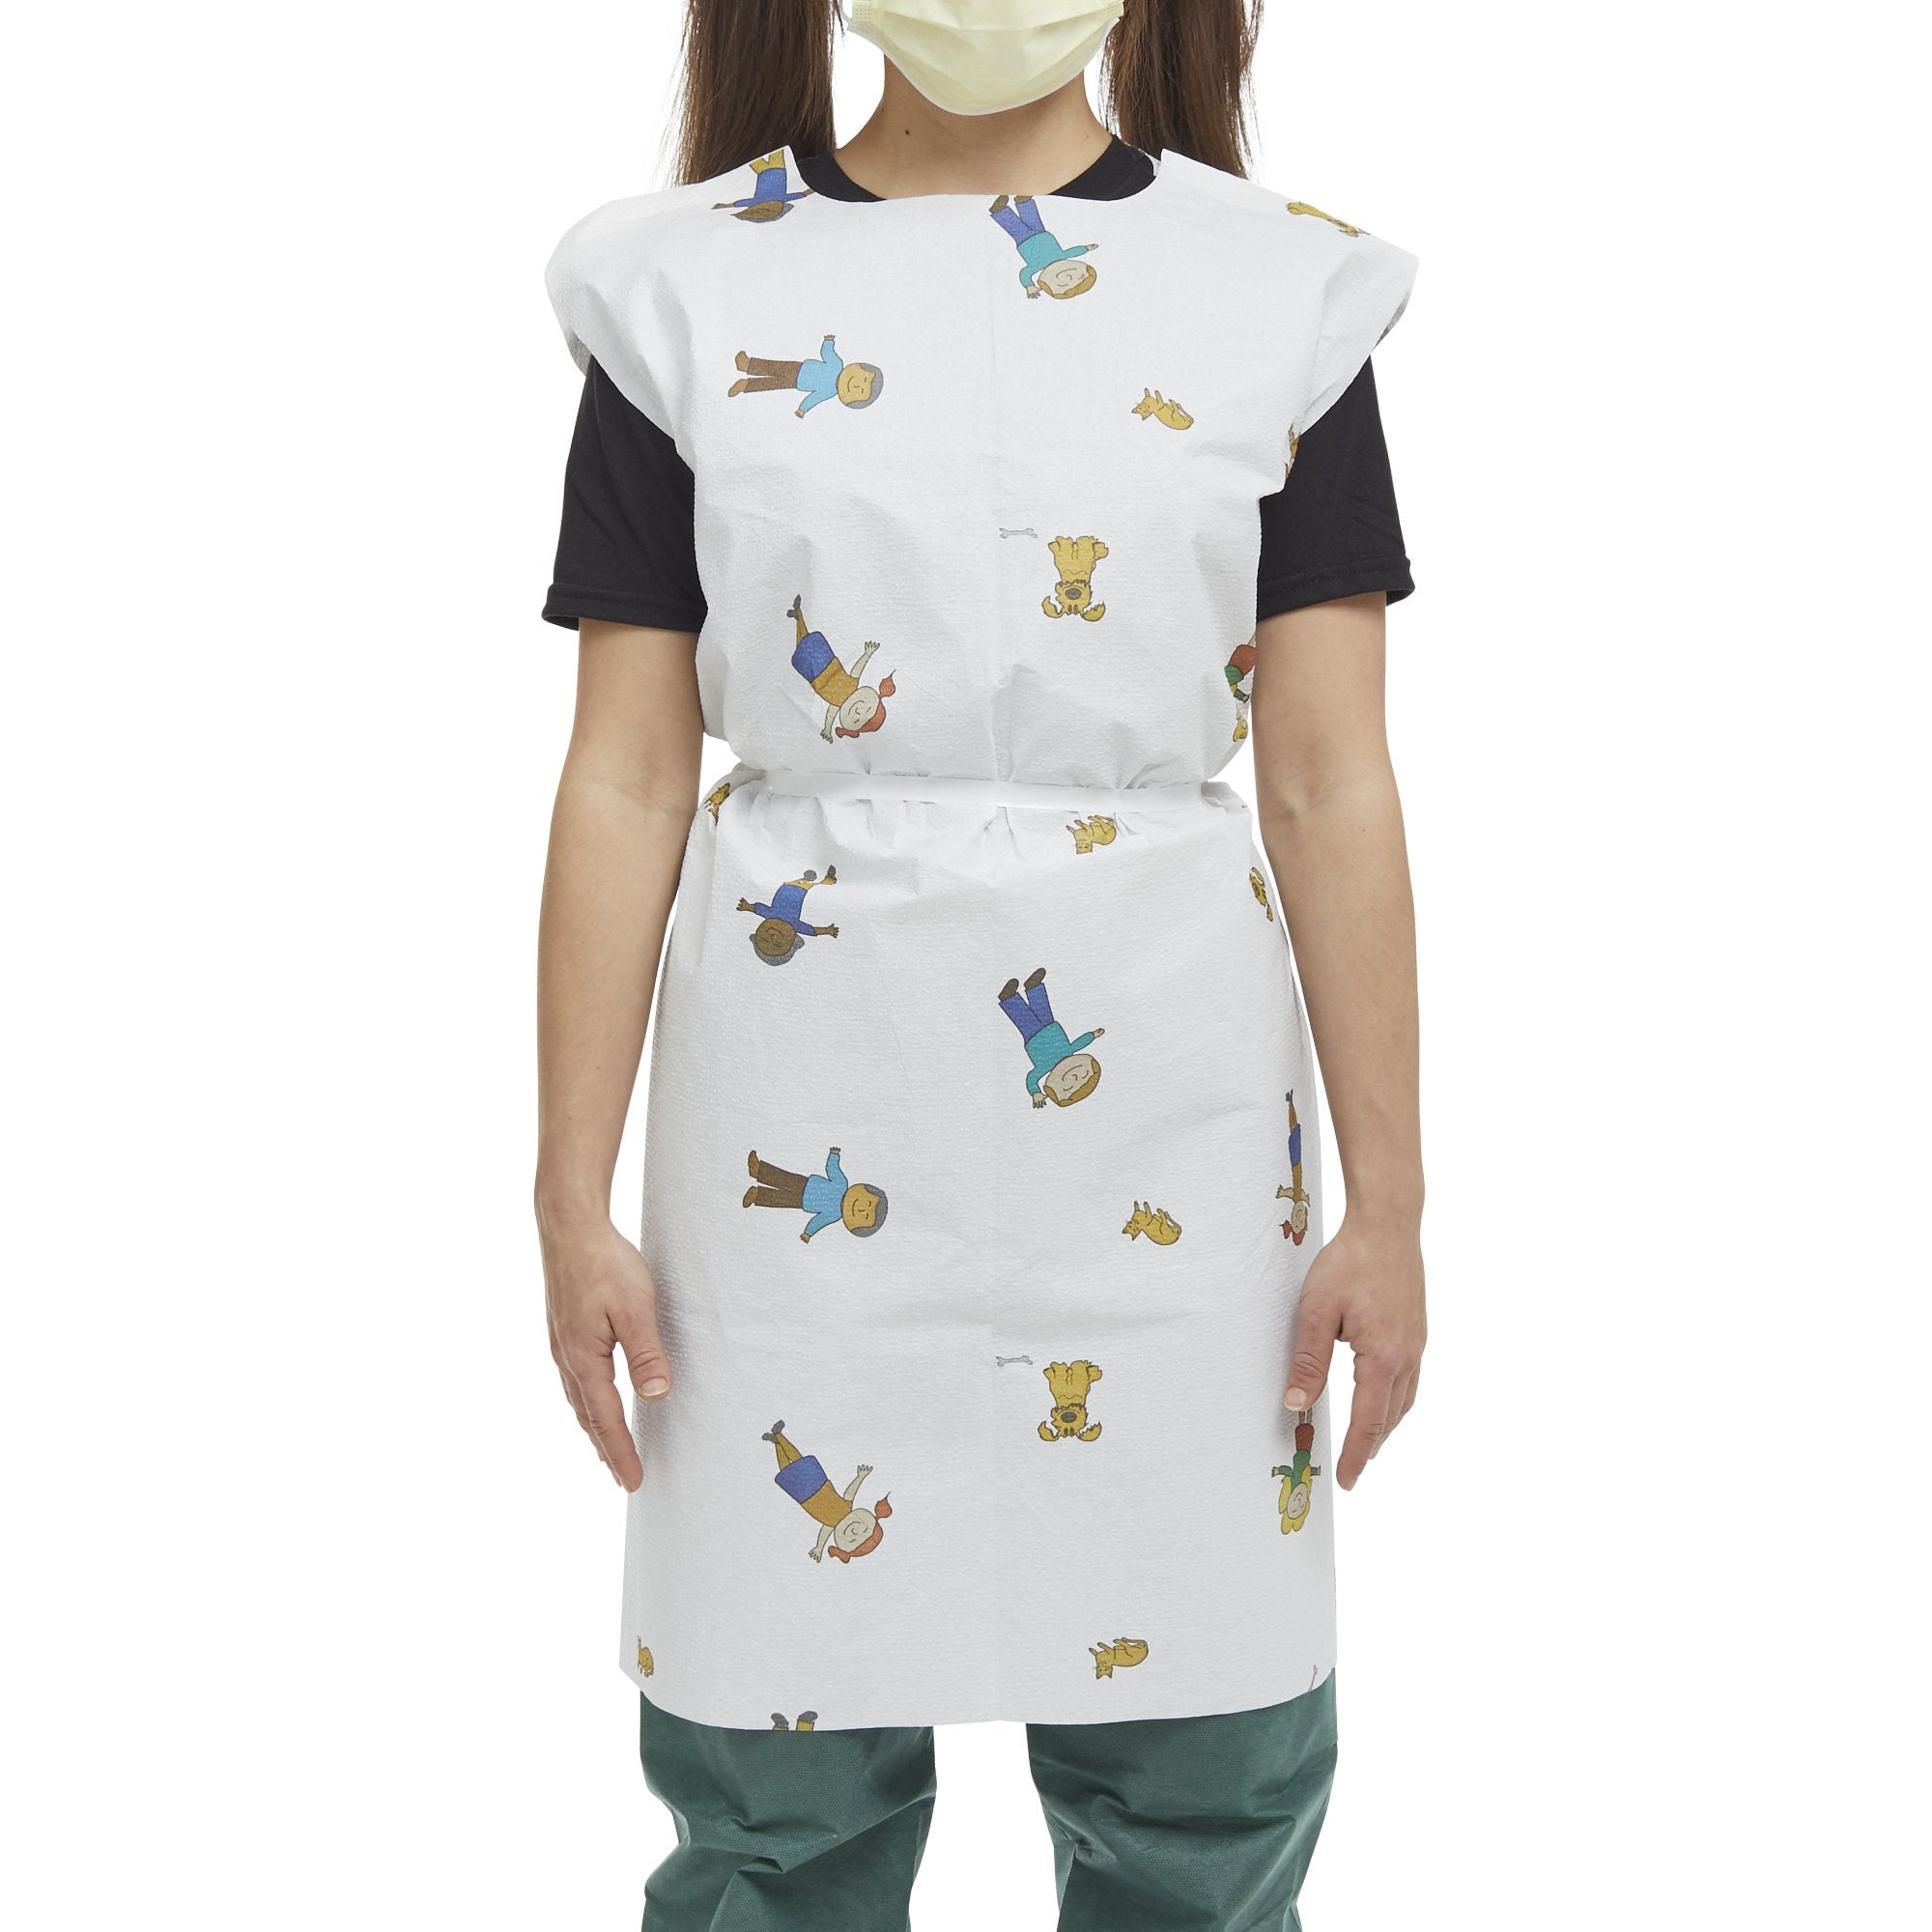 McKesson Pediatric Exam Gown, Medium, McKesson KIDS™ Print (50 Units)